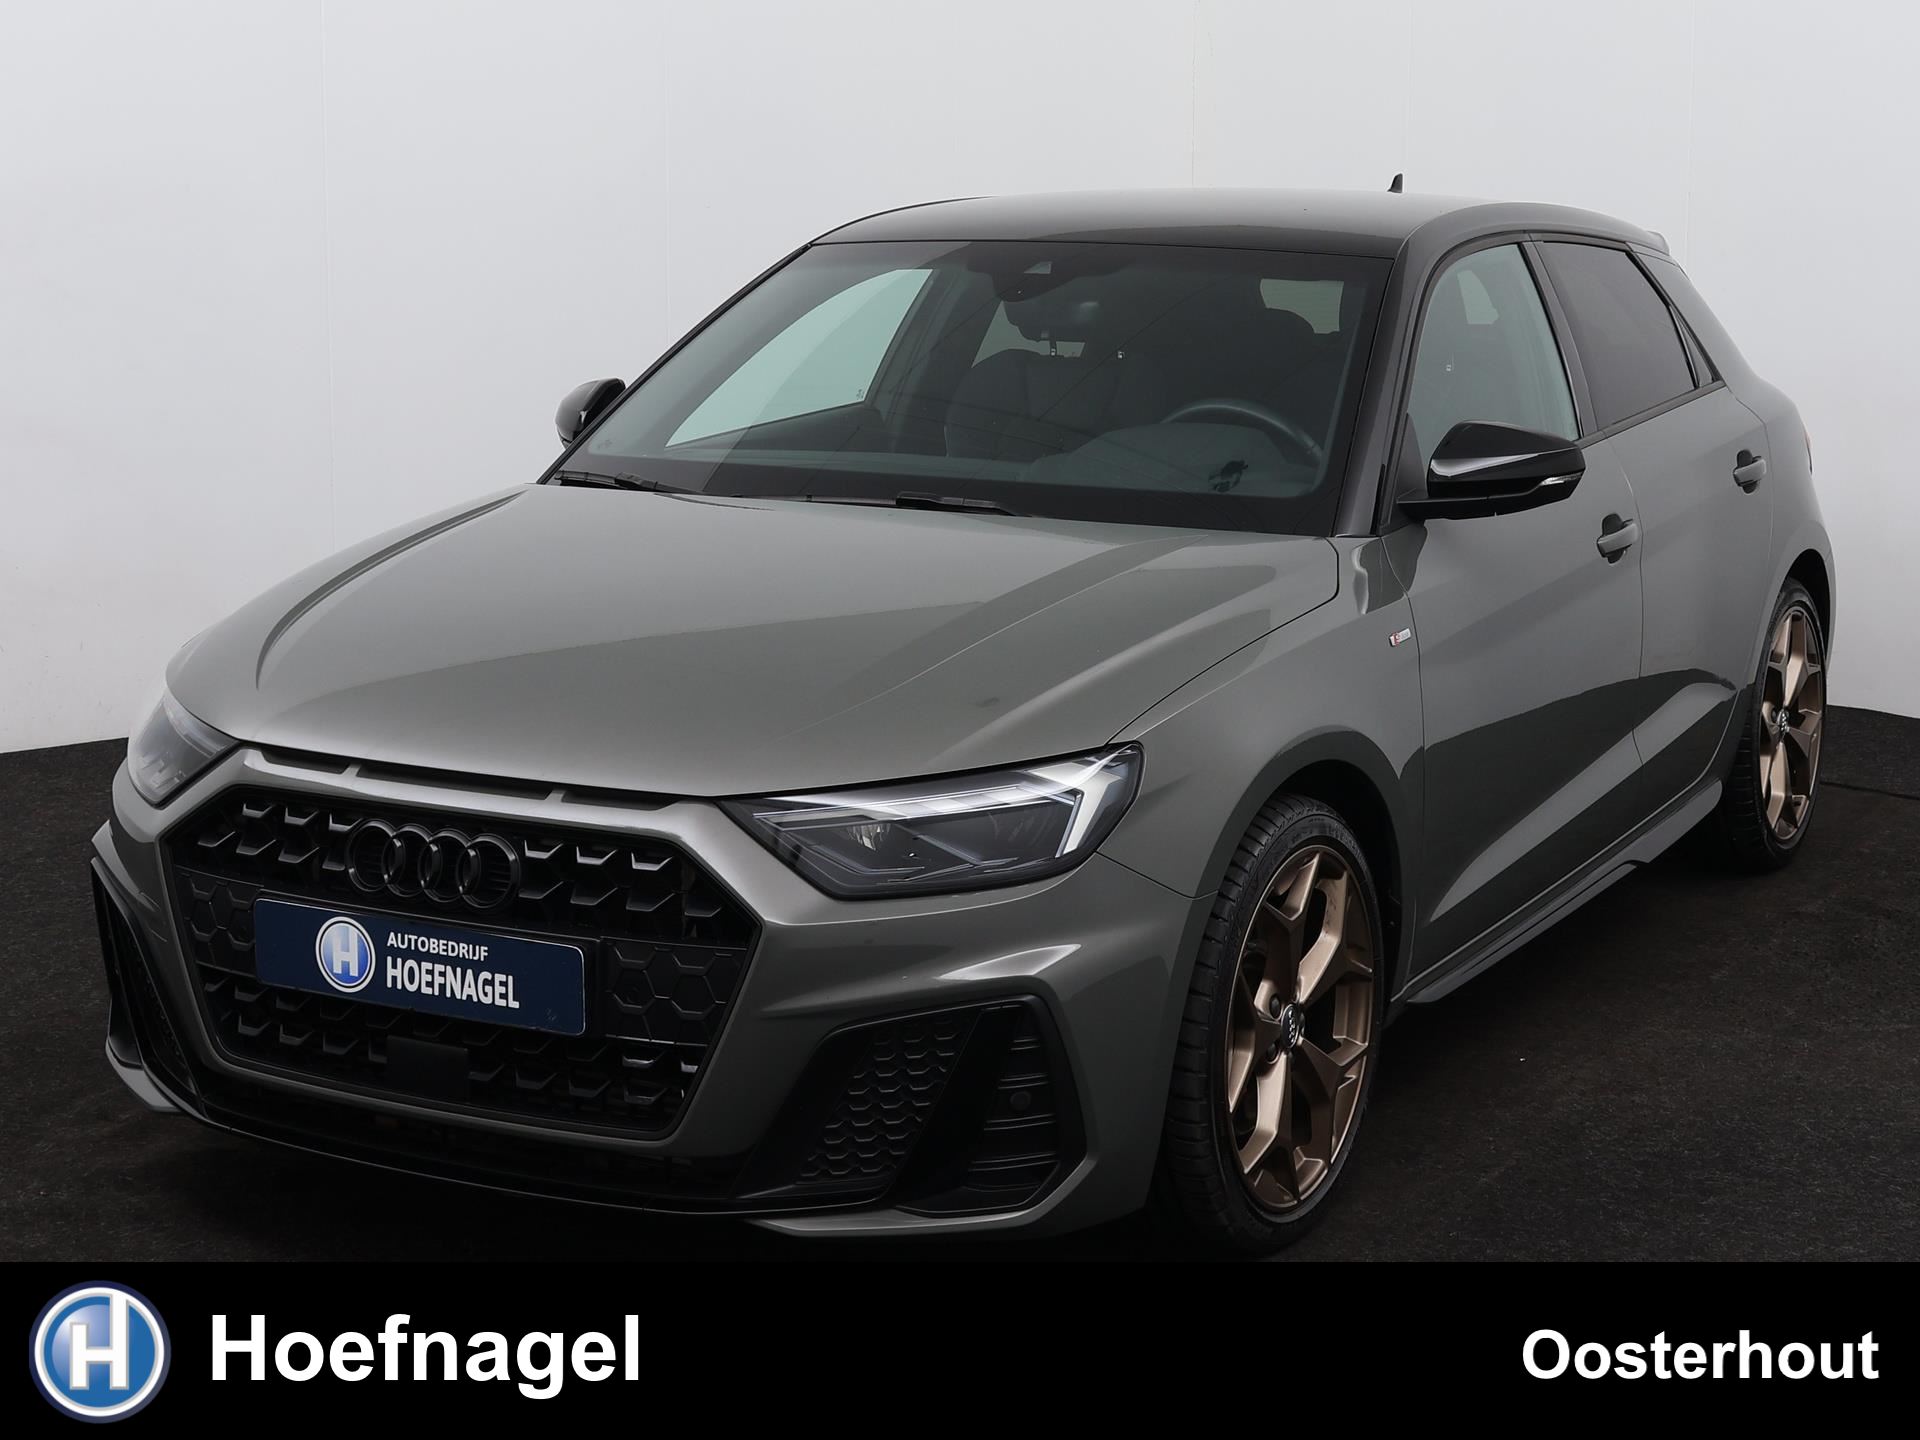 Audi A1 SPORTBACK occasion - Autobedrijf Hoefnagel Oosterhout B.V.